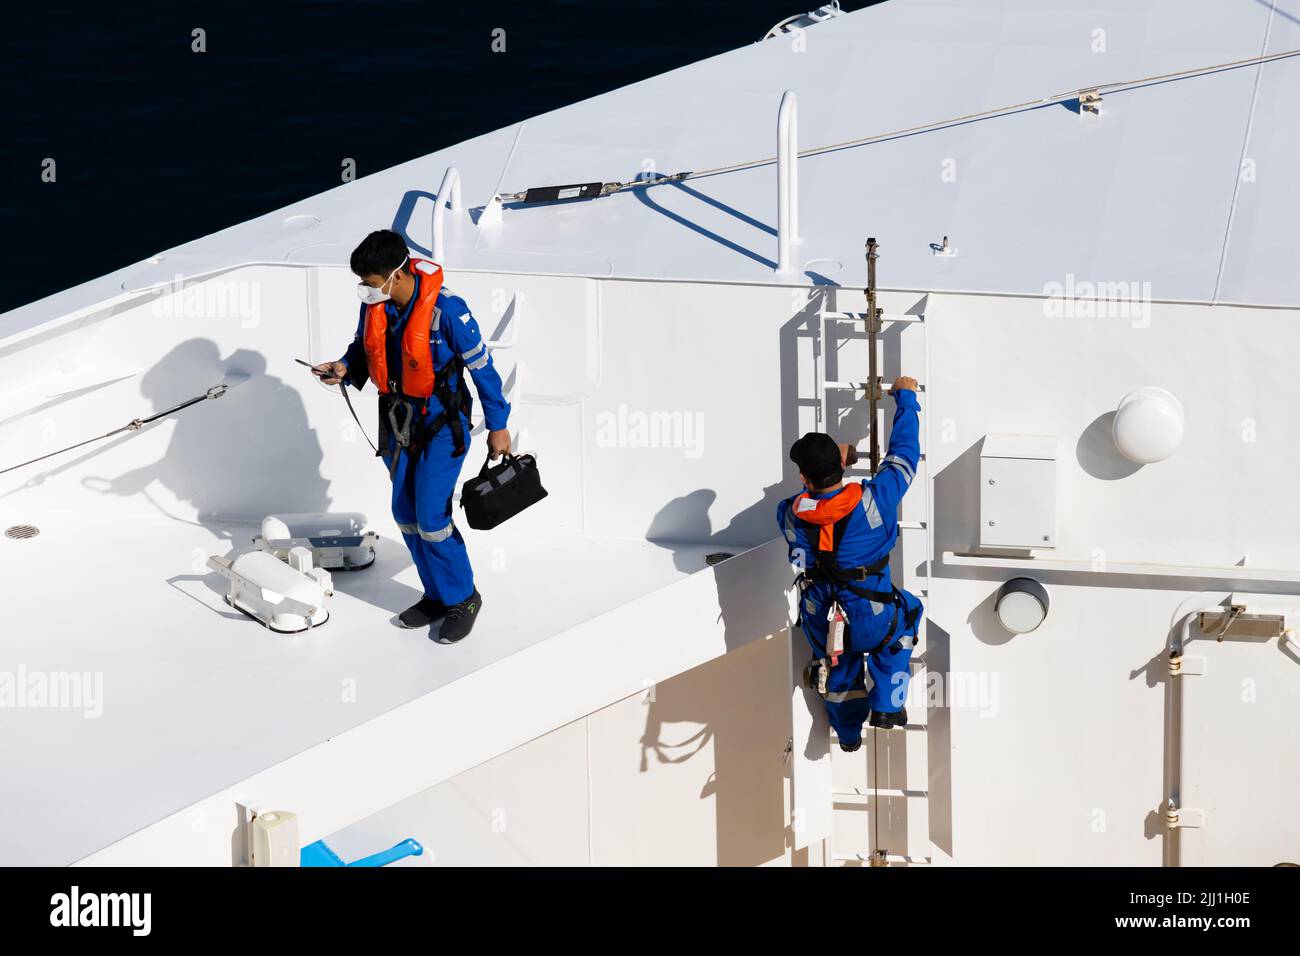 El personal de mantenimiento de los buques se prepara para trabajar con EPI completo en el MS Iona, atracado en Stavanger, Noruega Foto de stock